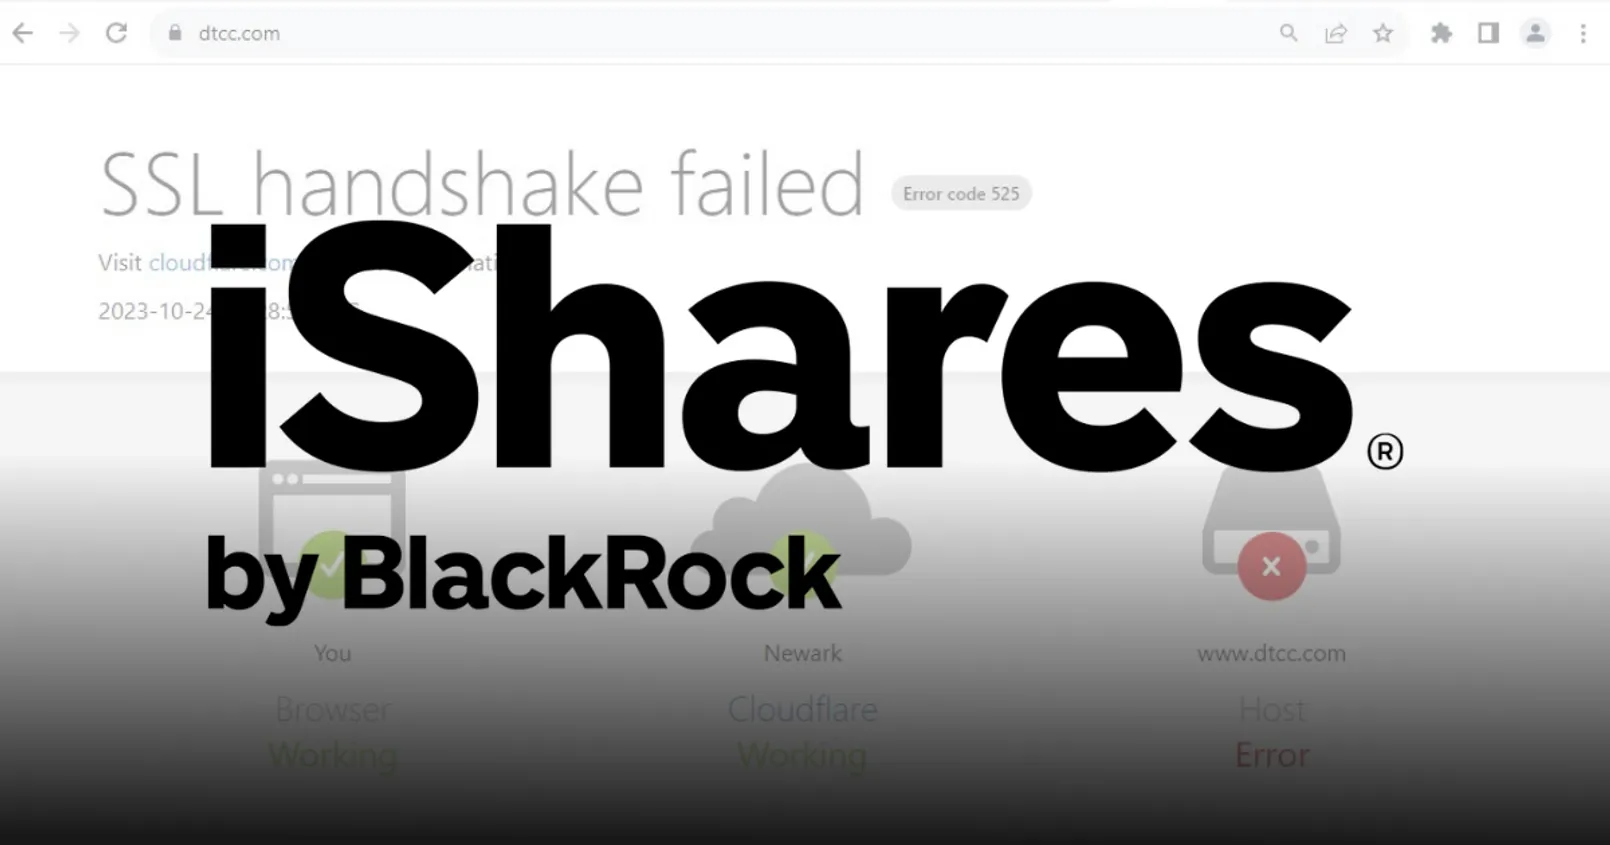 สุดงง! เมื่อรายชื่อกองทุน 'iShares' ของ BlackRock จู่ๆหายไปจากเว็บไซต์ของ DTCC